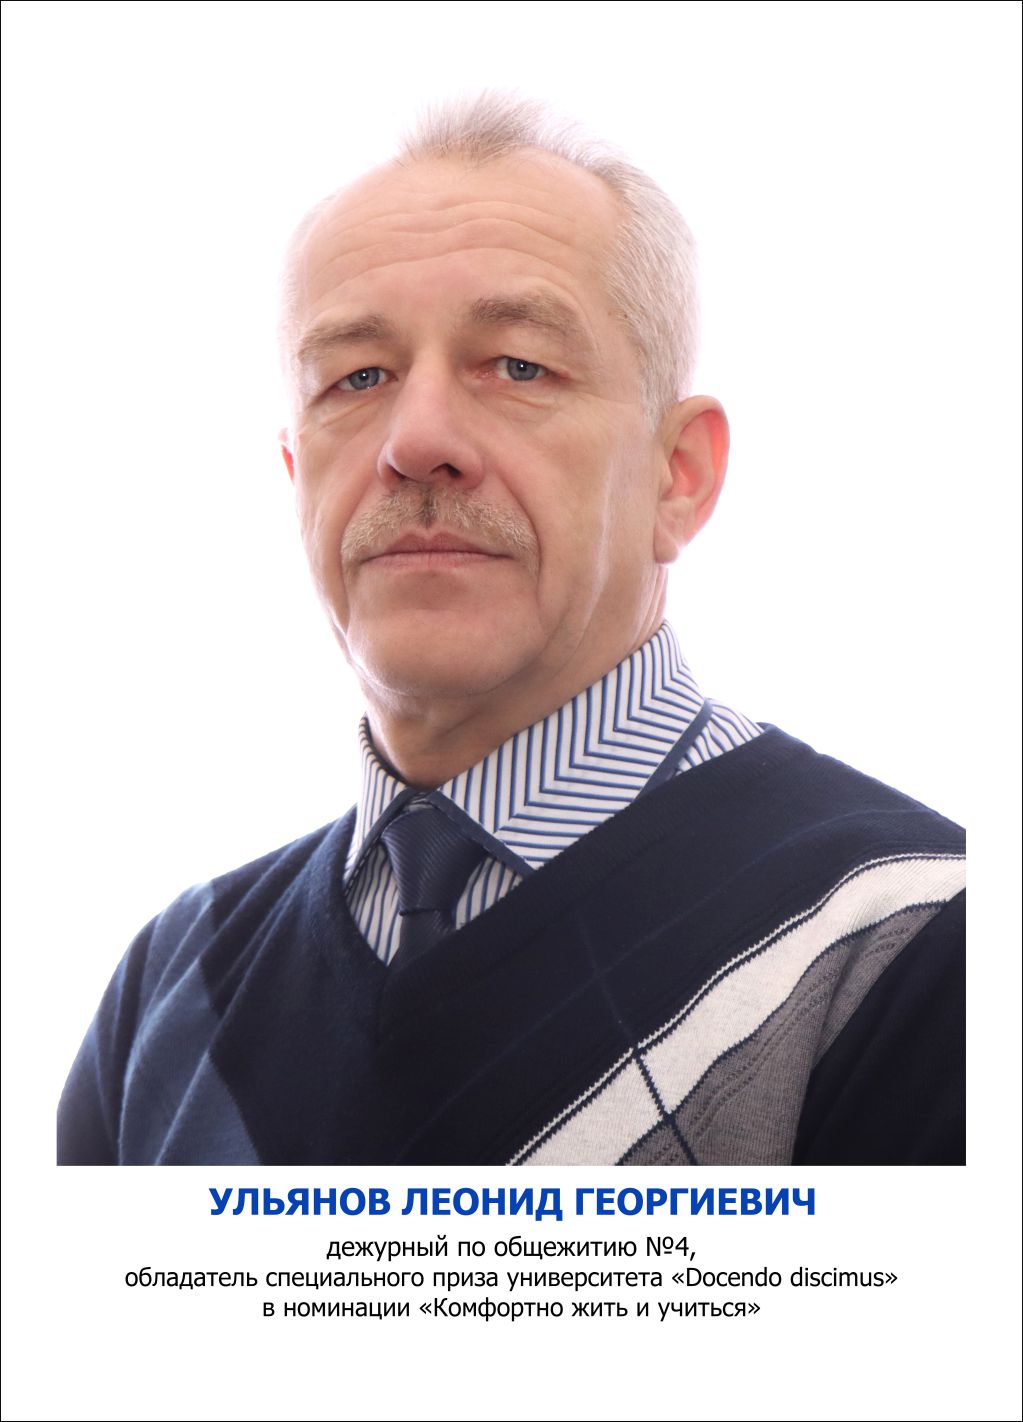 Ульянов Леонид Георгиевич